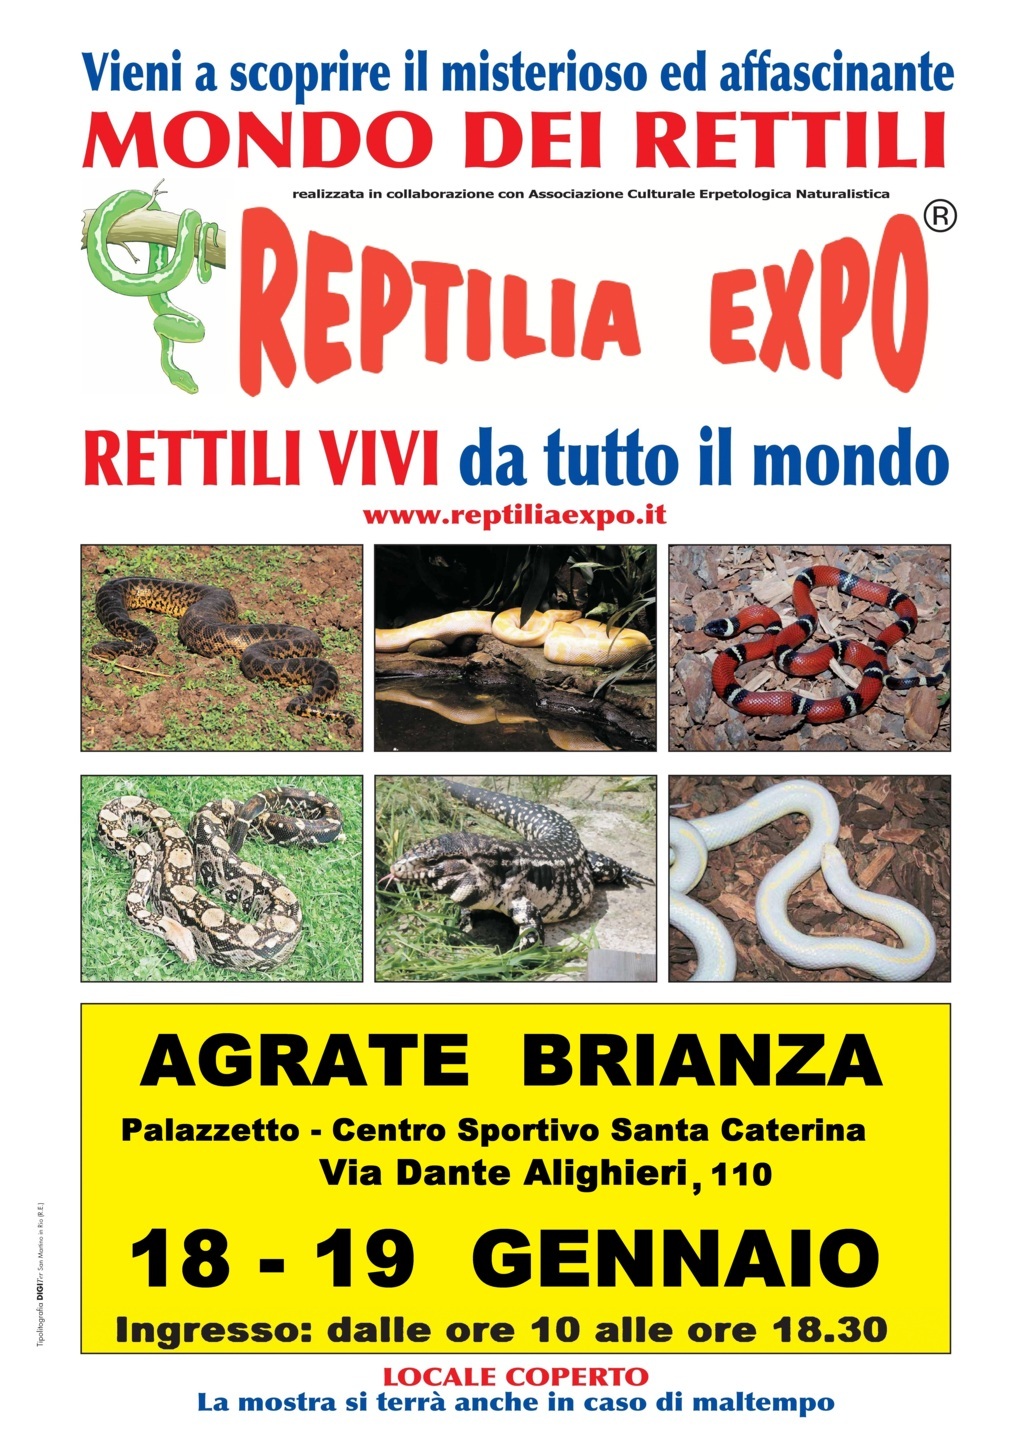 Reptilia Expo - l'affascinante mondo dei rettili